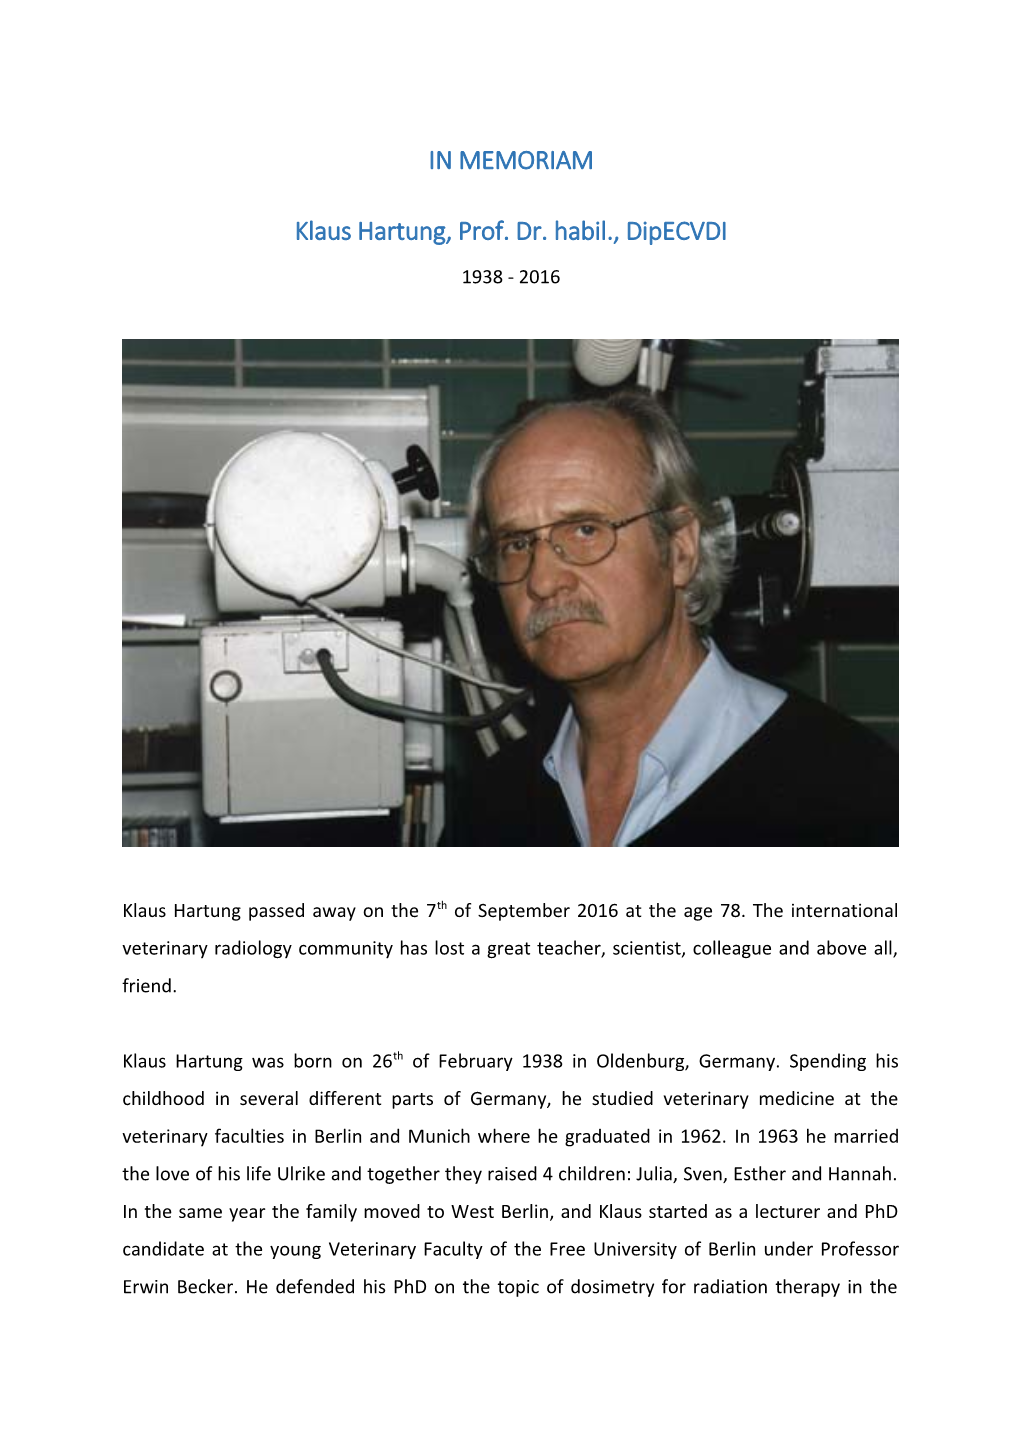 Klaus Hartung, Prof. Dr. Habil., Dipecvdi